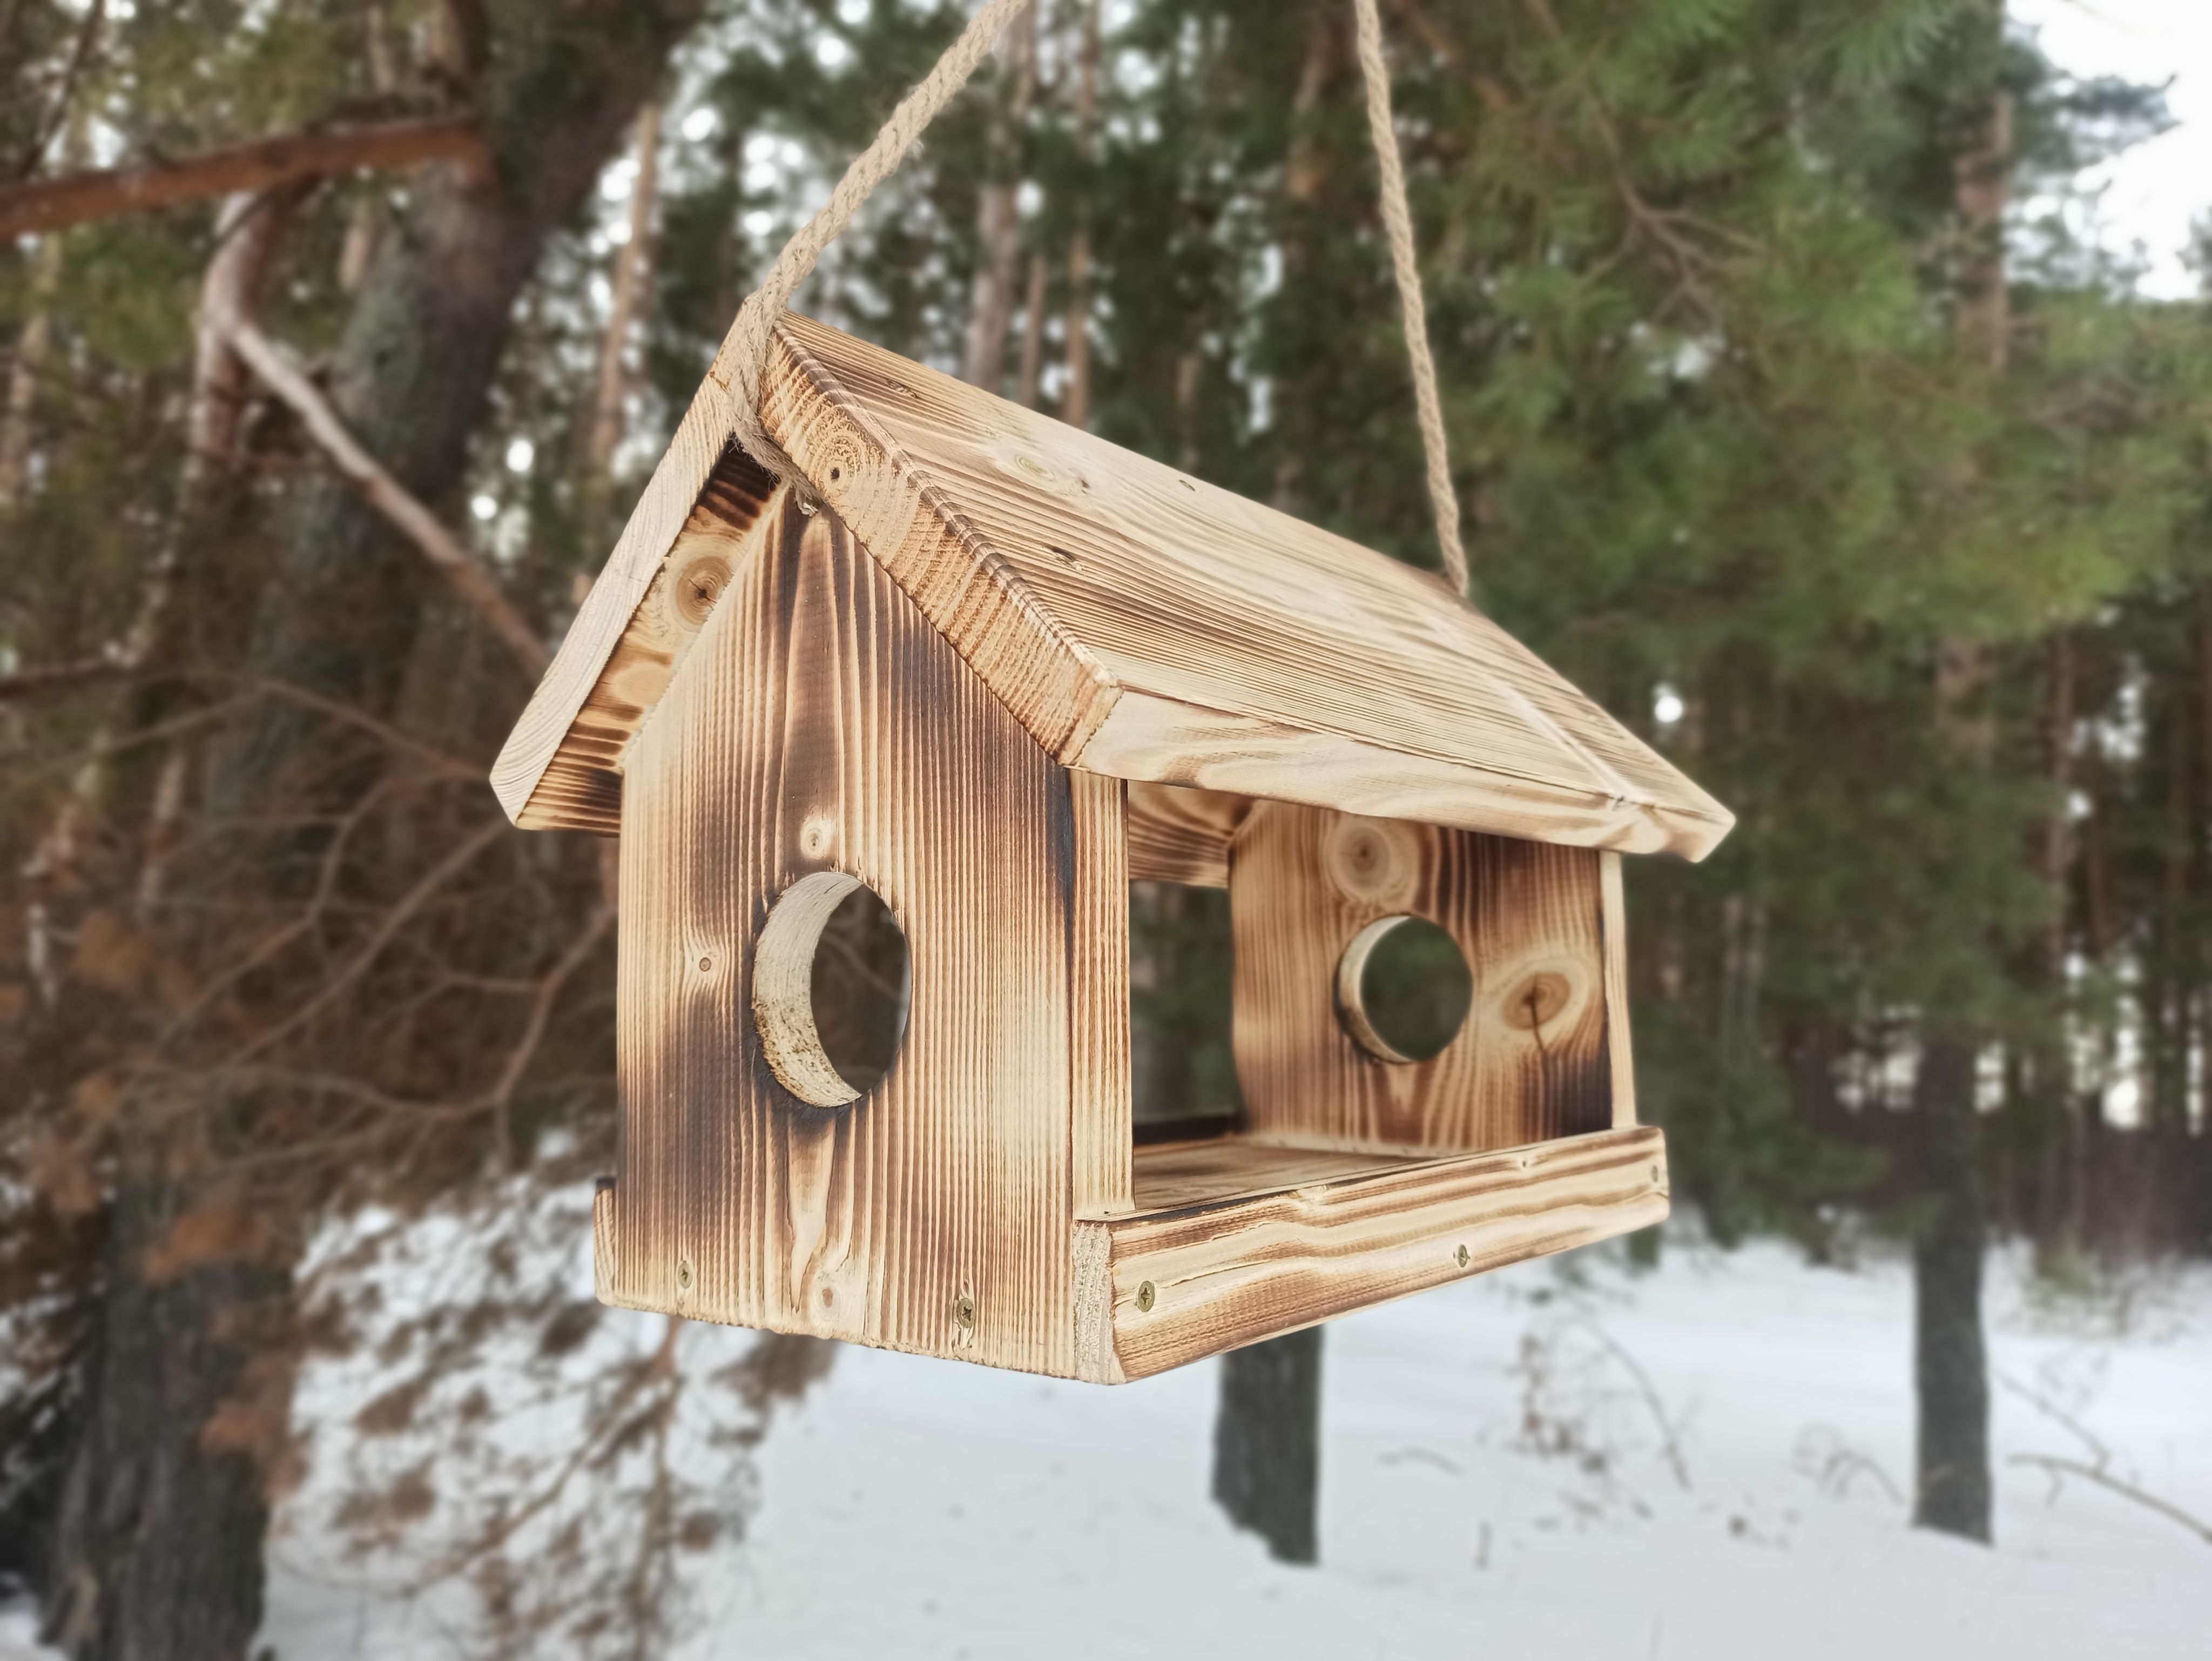 Кормушки из дерева: для птиц своими руками, пошаговые инструкции + фото